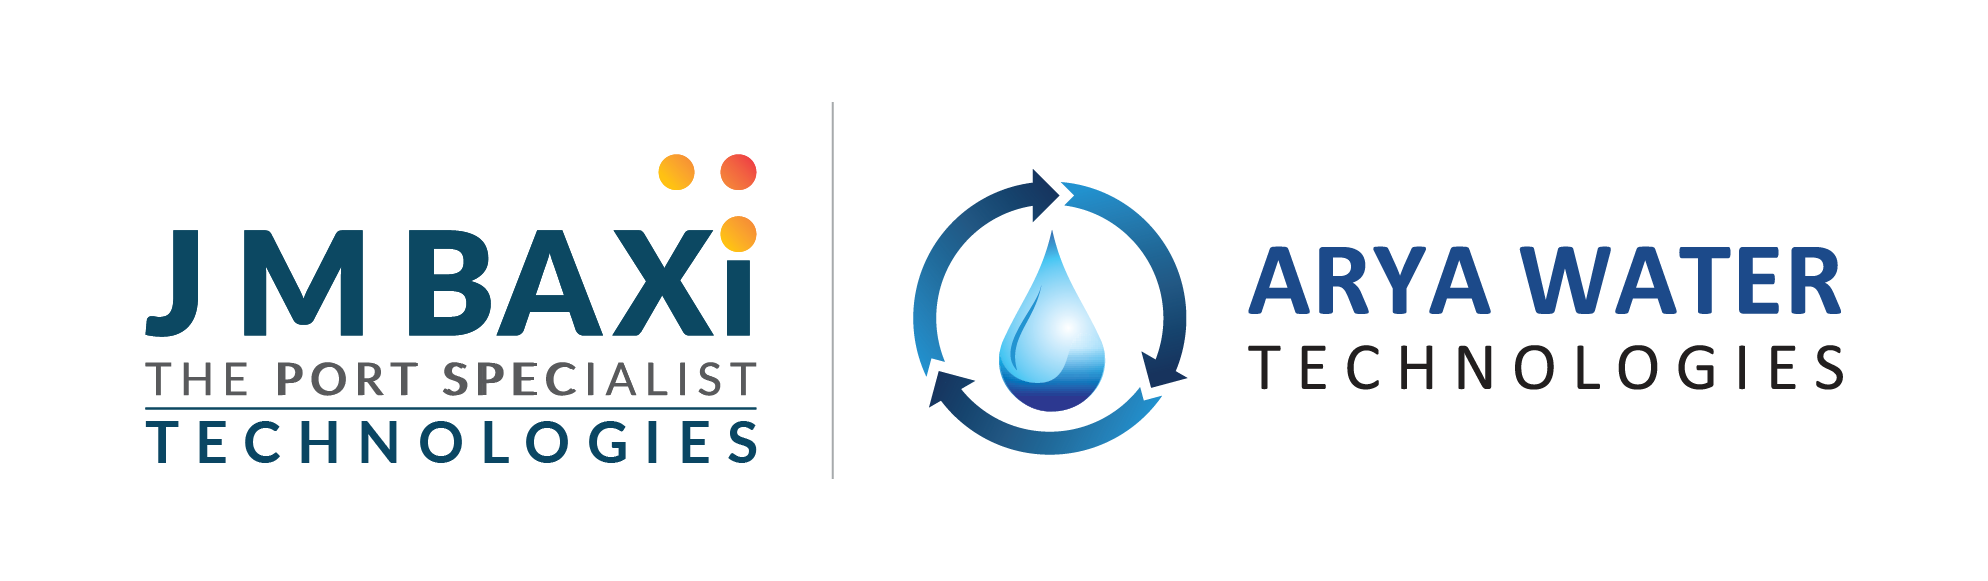 Arya Water Technologies